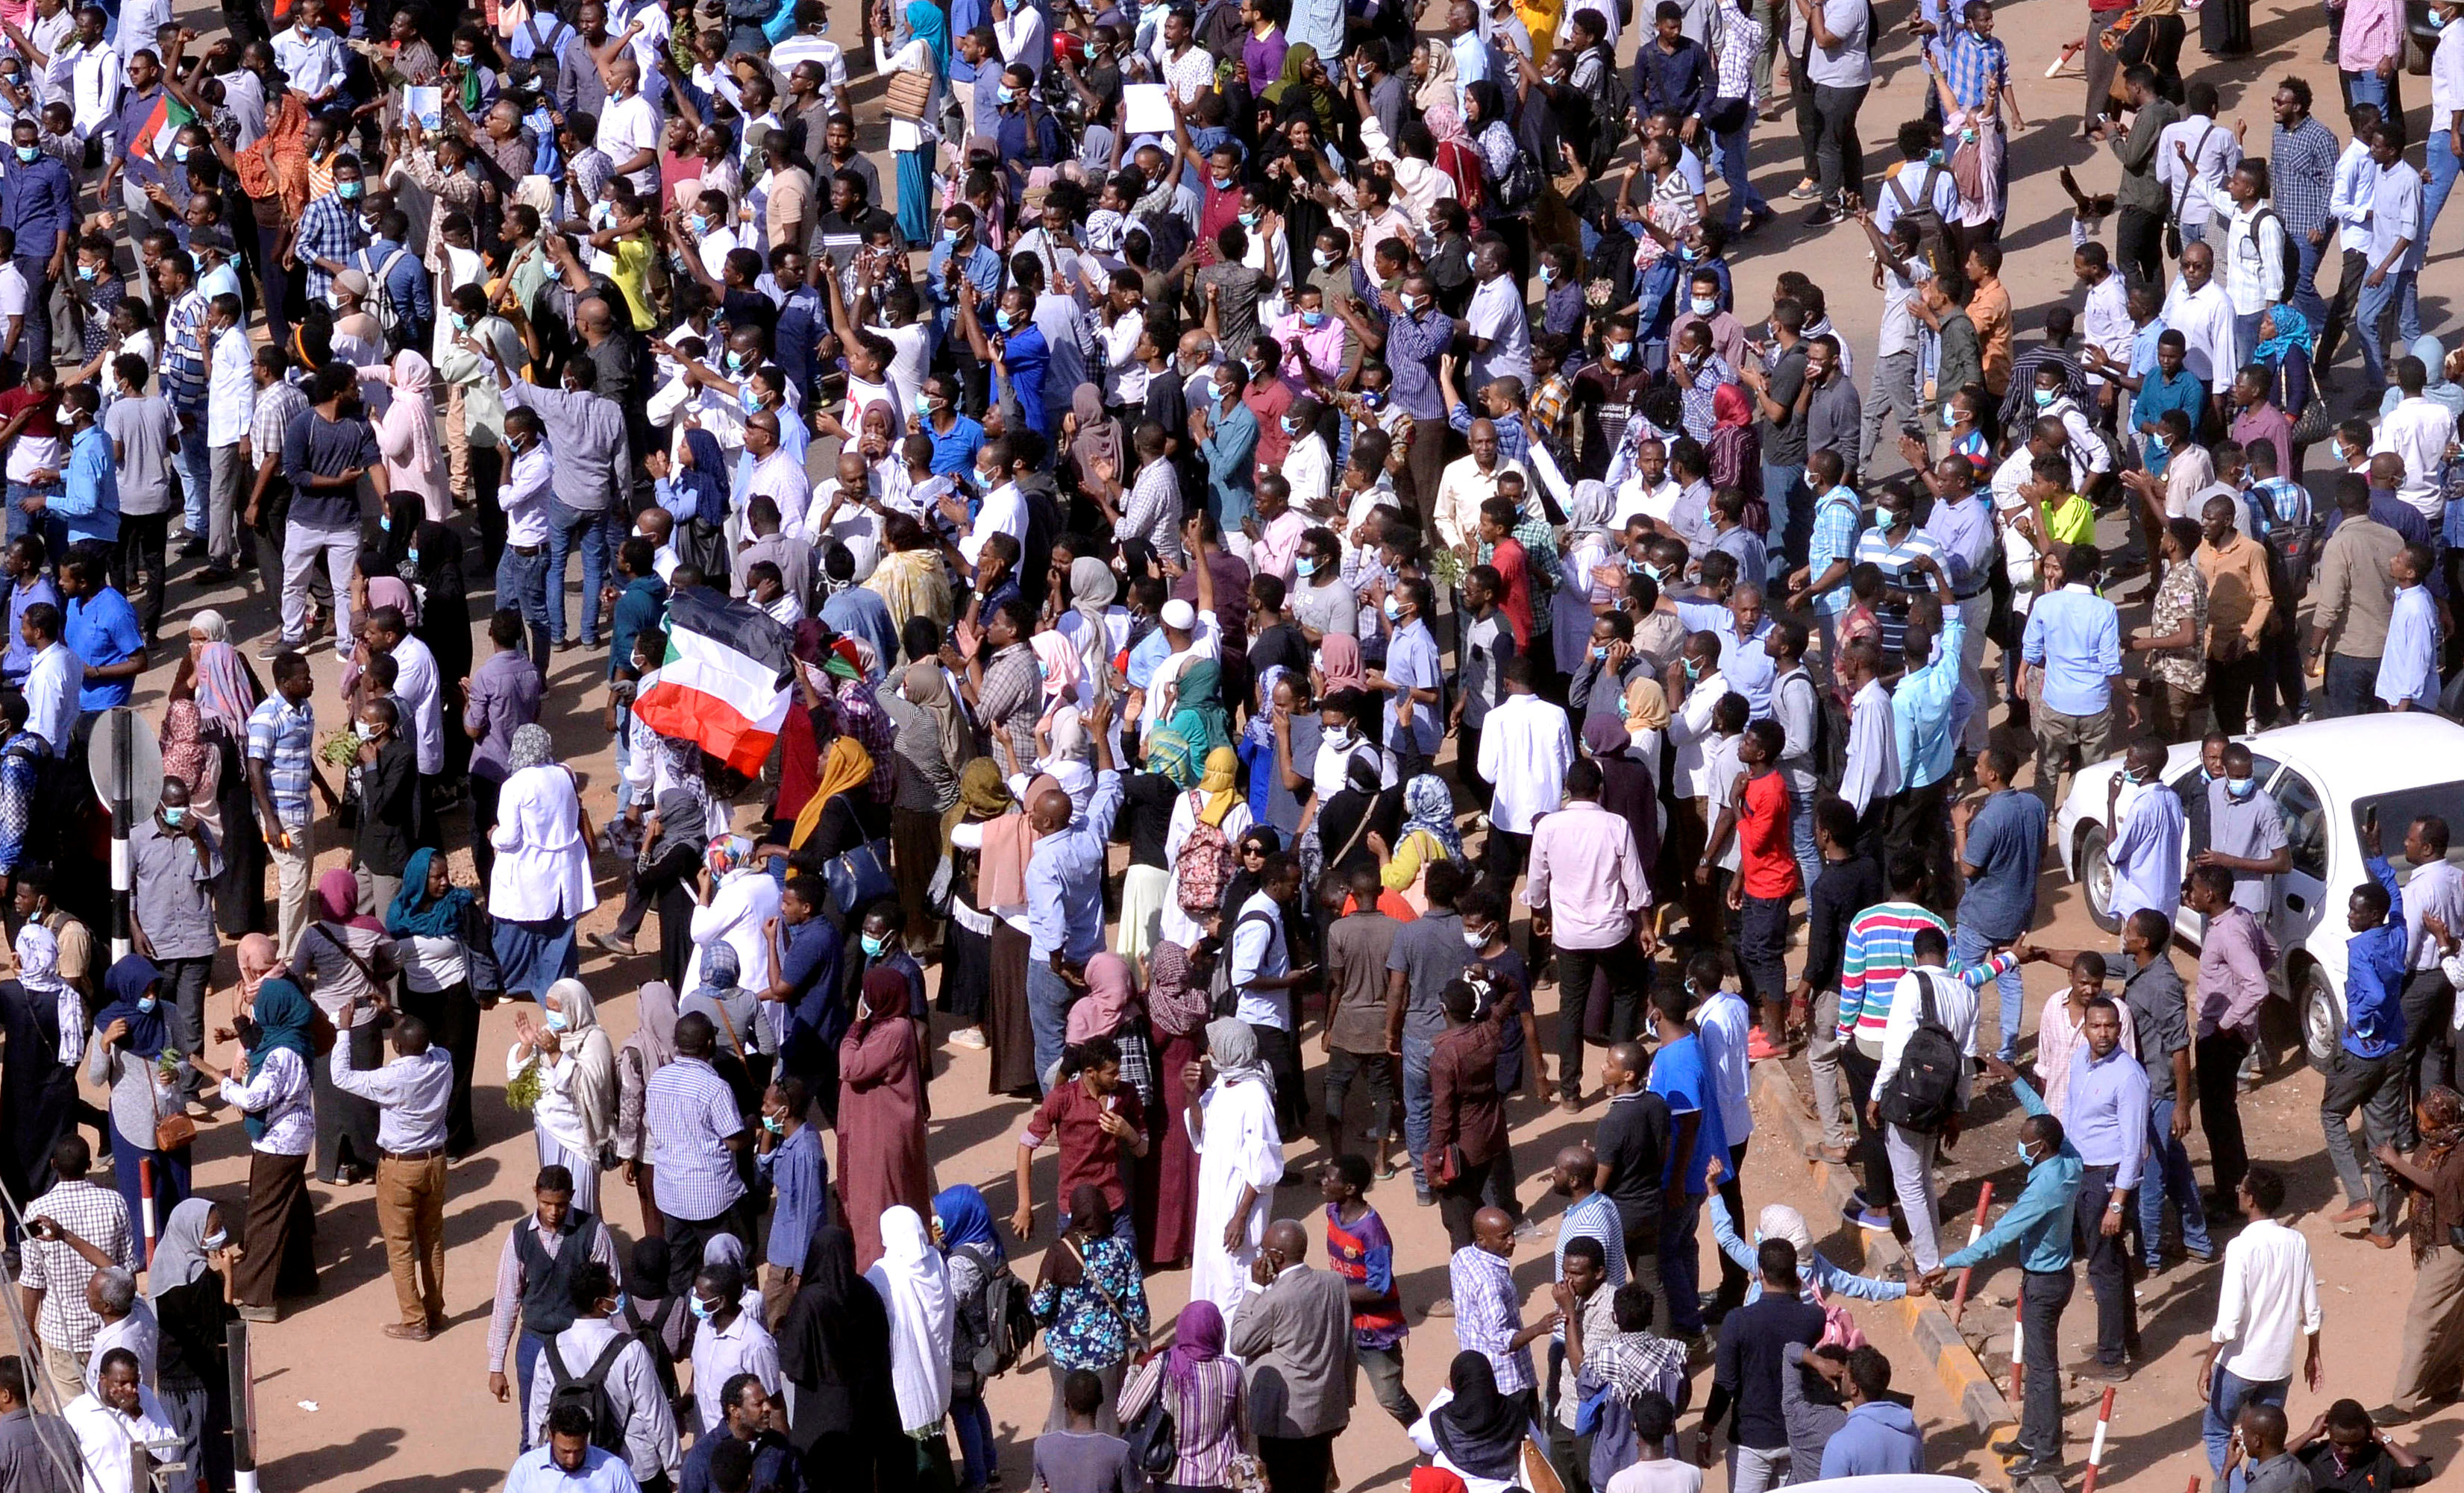 السودانيون يهددون بمسيرات مليونية في حال عدم الإستجابة لمطالبهم